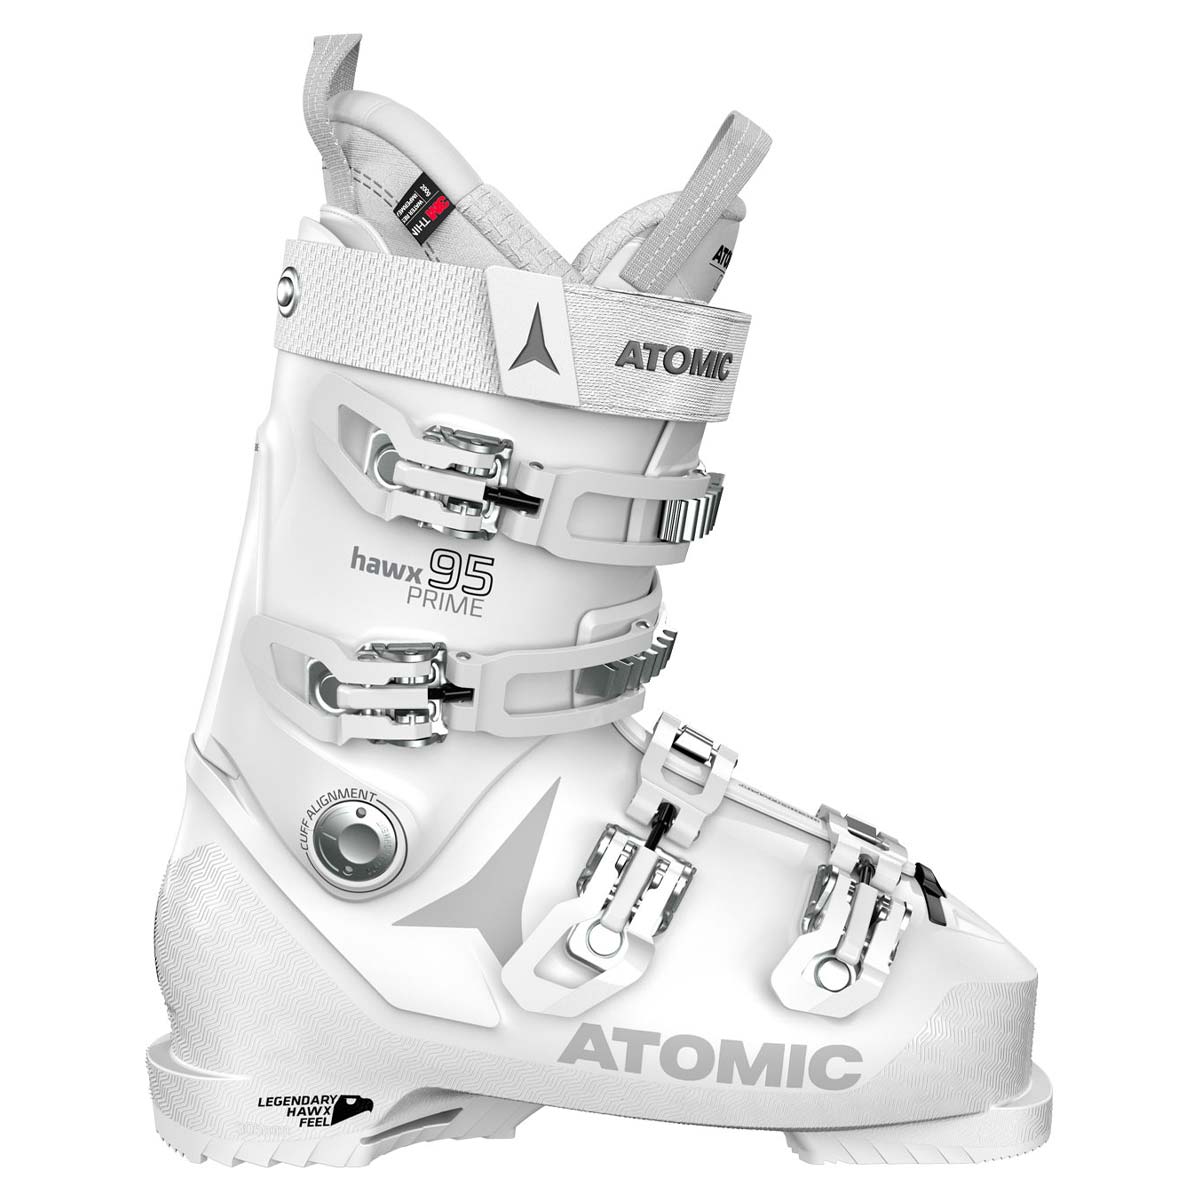  Scarpone sci Atomic Hawx Prime 95W da donna (Colore: bianco silver, Taglia: 23/23.5) 